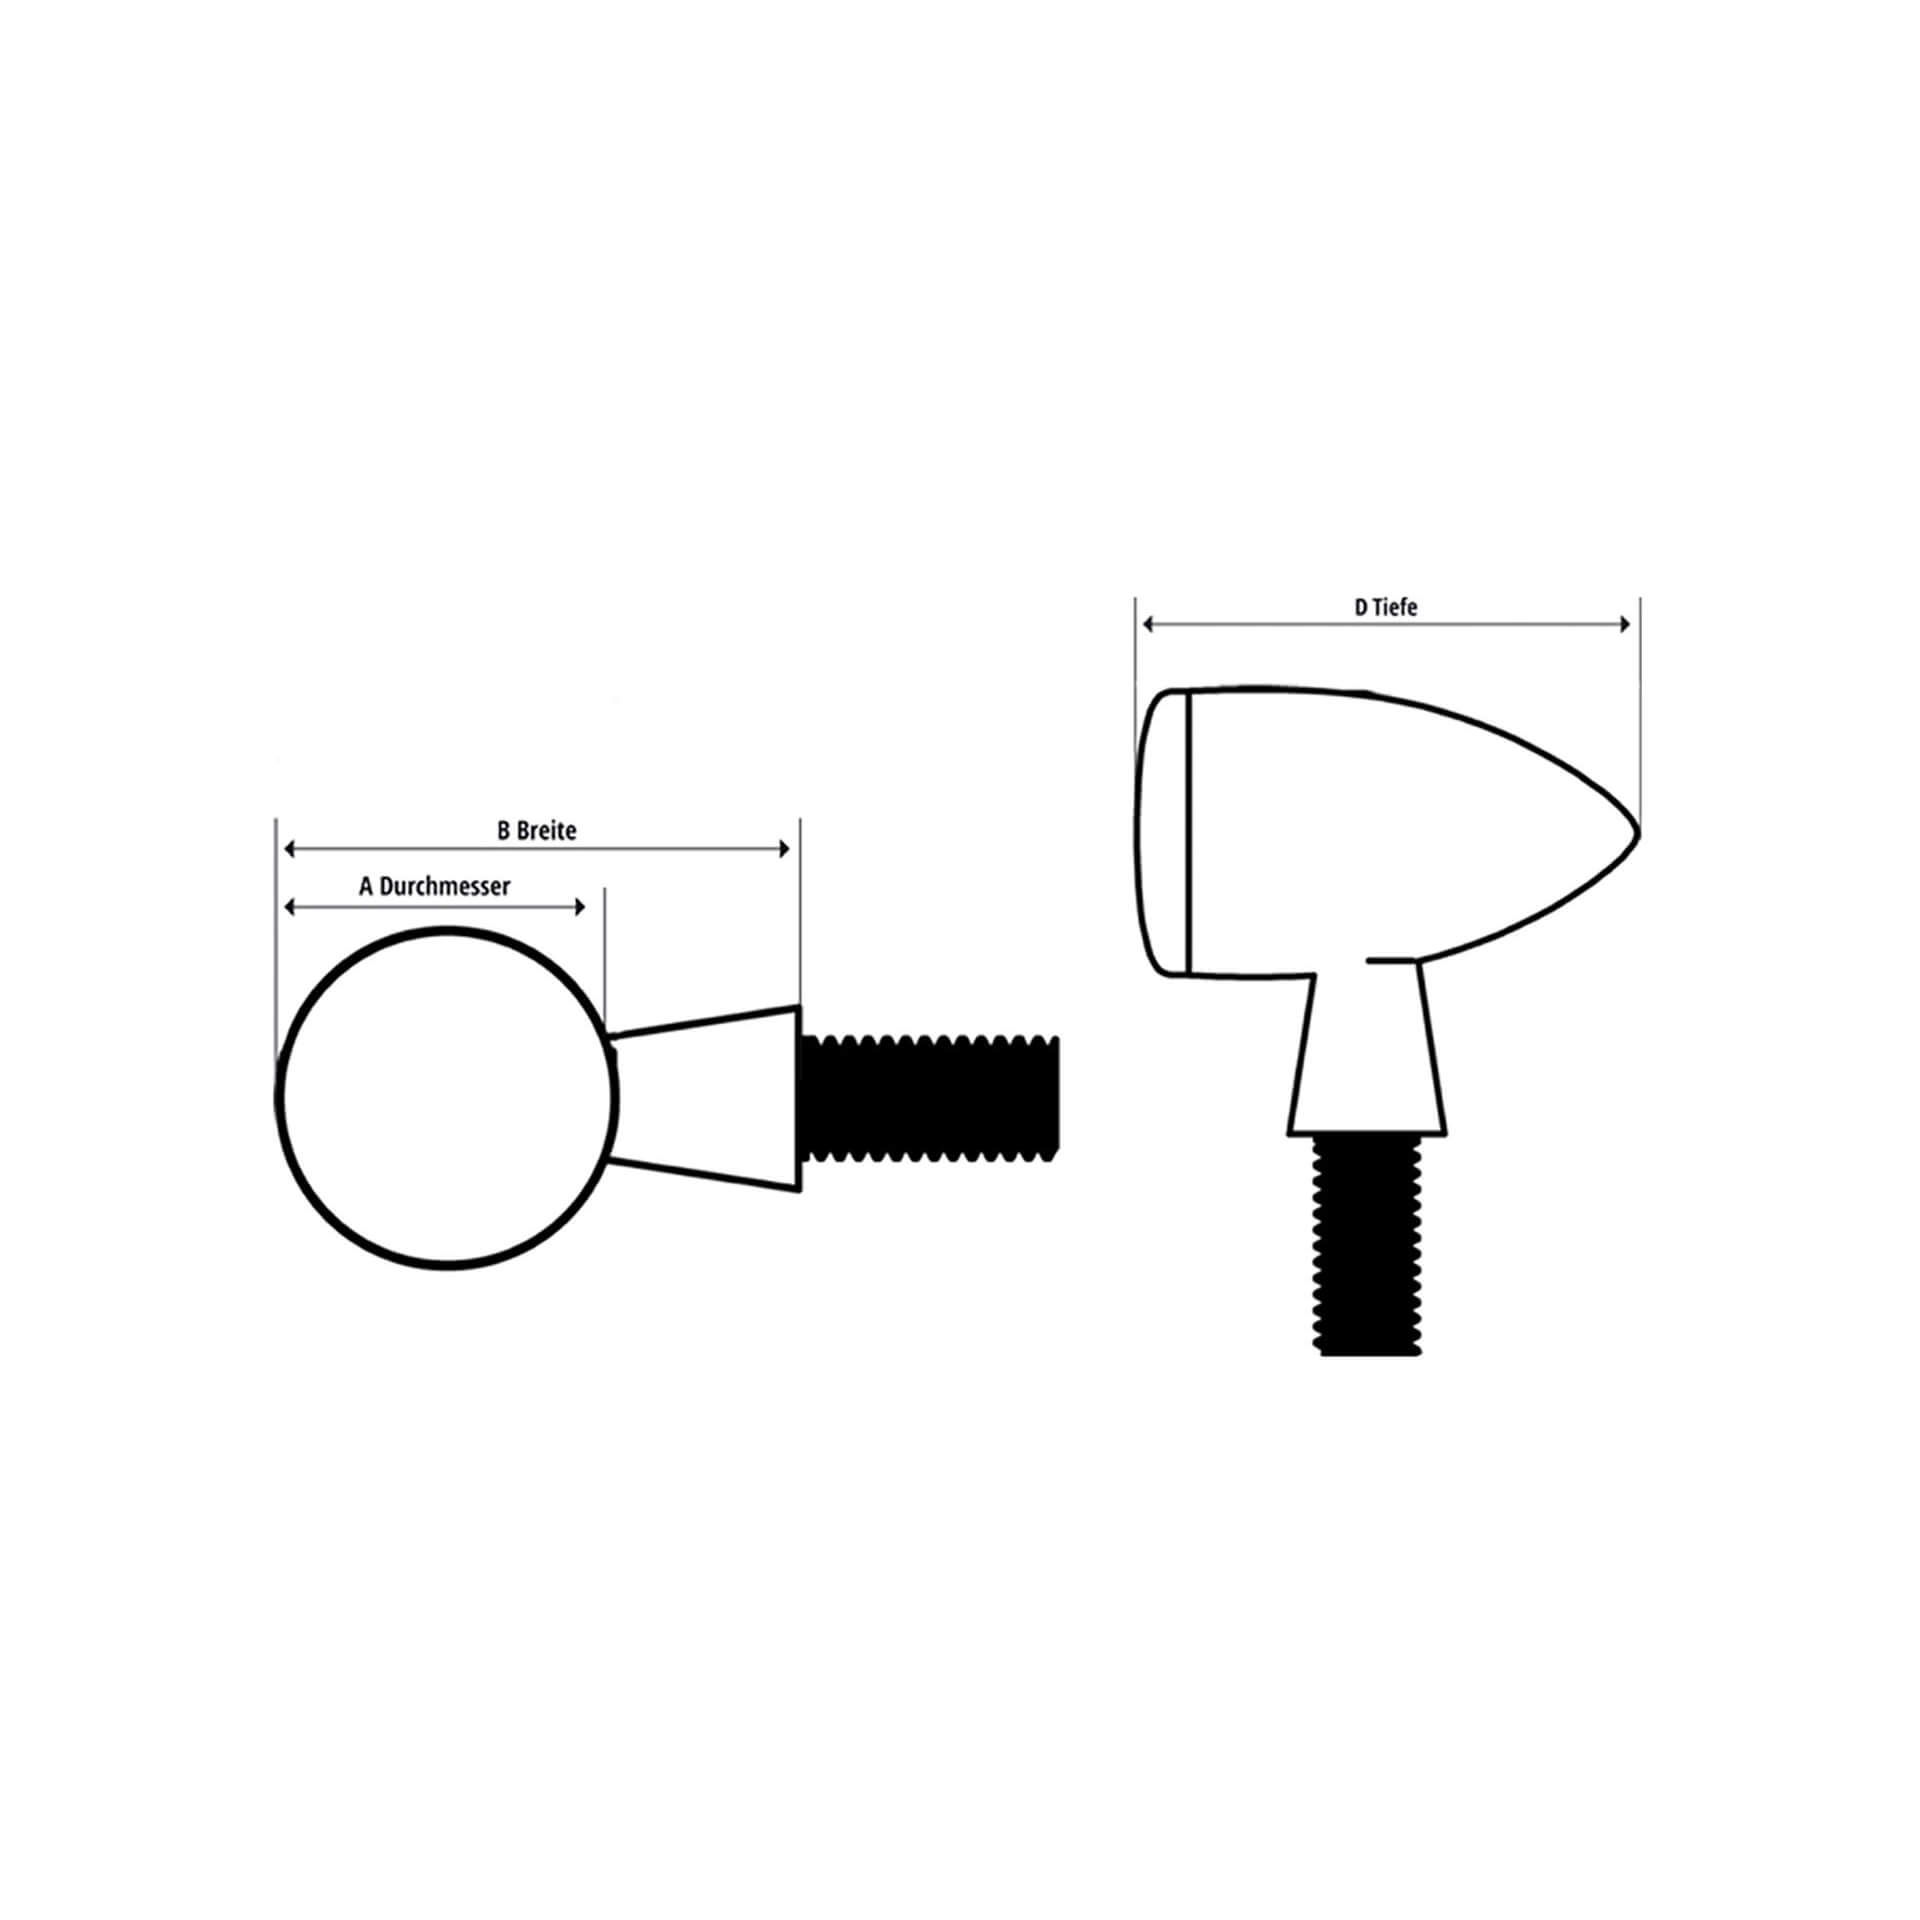 HIGHSIDER APOLLO CLASSIC LED señal de giro / luz de posición - Plata